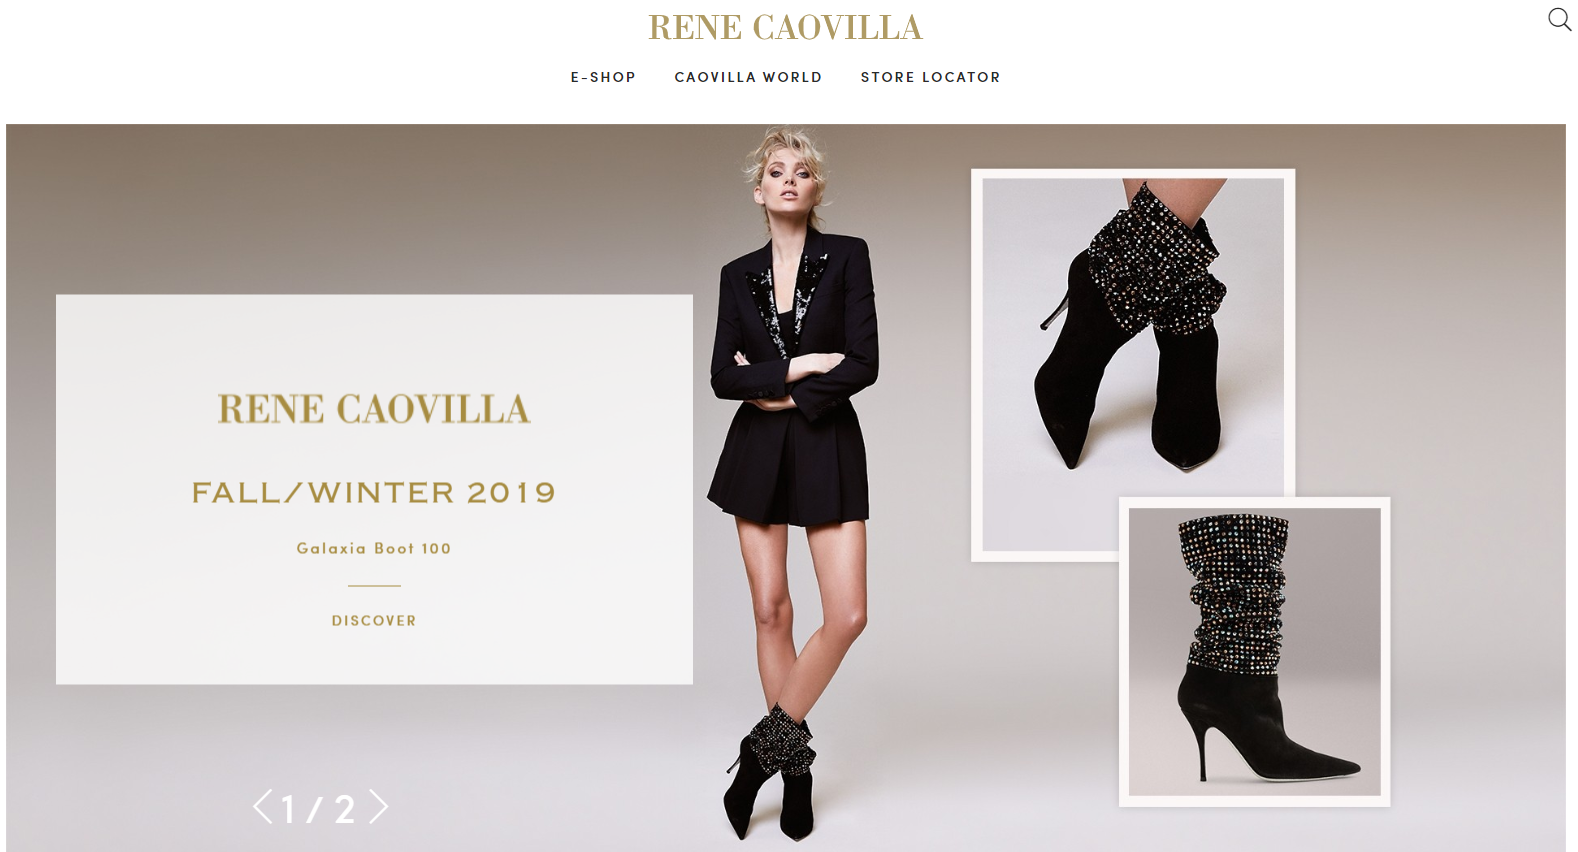 意大利奢华鞋履品牌 René Caovilla 2019年销售额预计将增长18%至4000万欧元